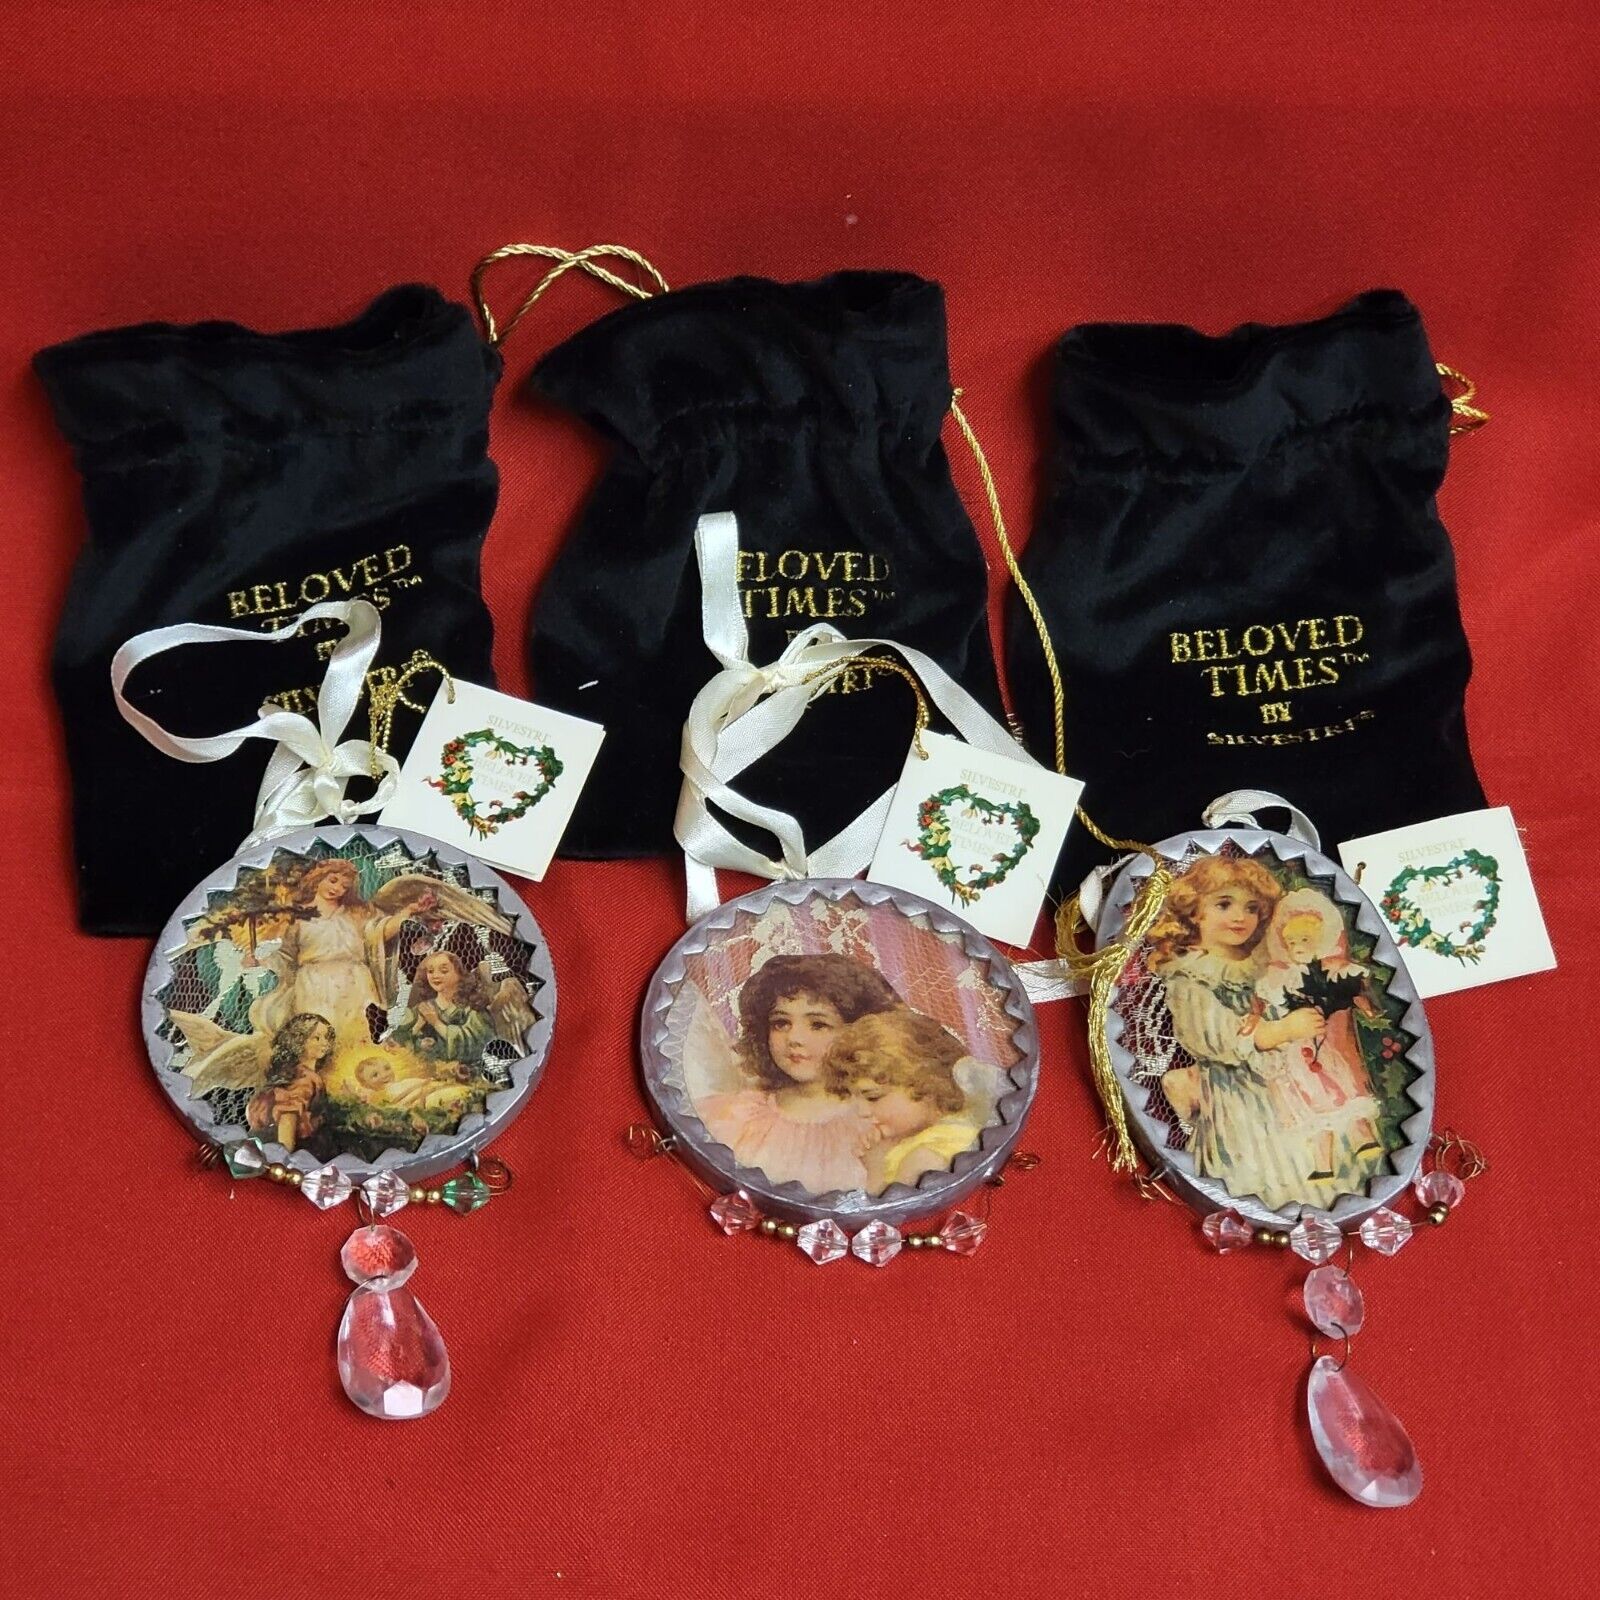 VTG Beloved Times by Silvestri Plaque Angel Ornaments Set of 3